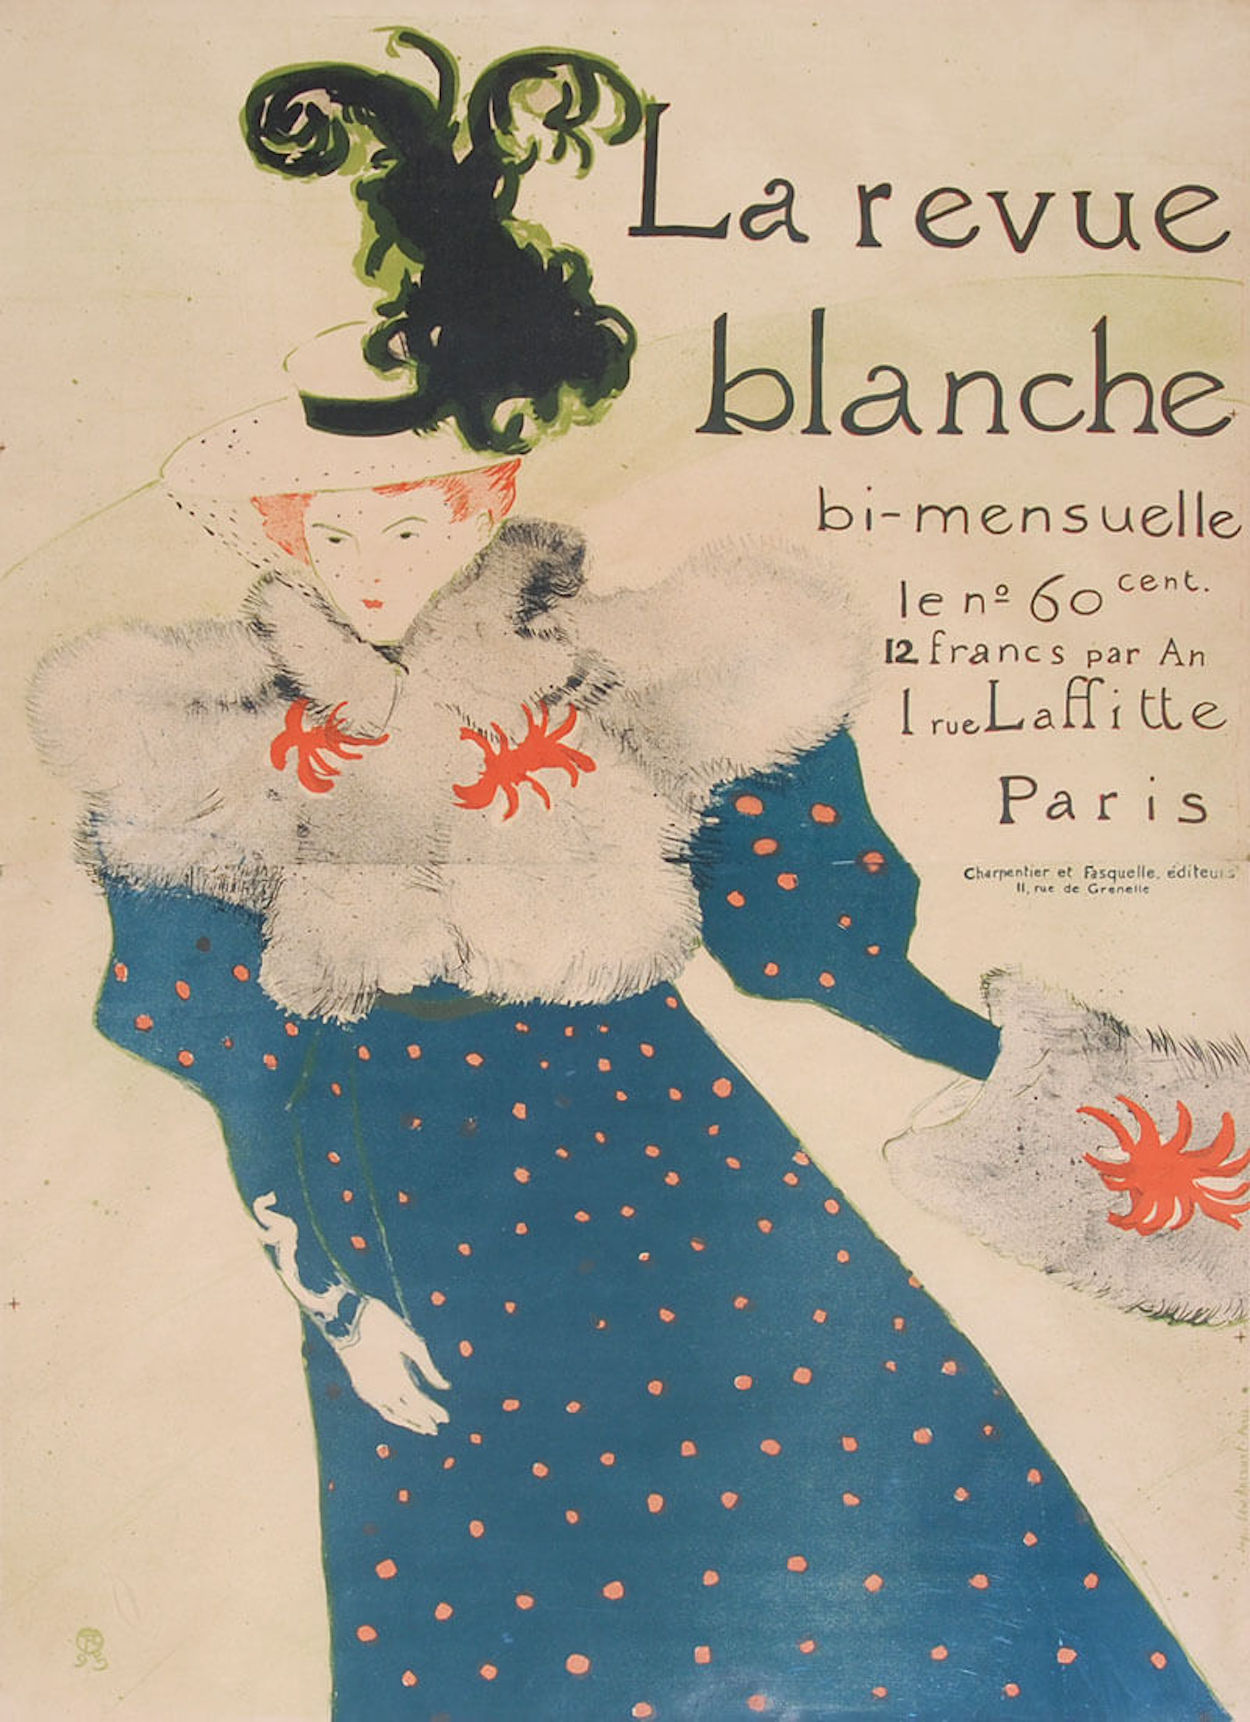 La Revue Blanche的海报 by 亨利 劳特累克 - 1895 